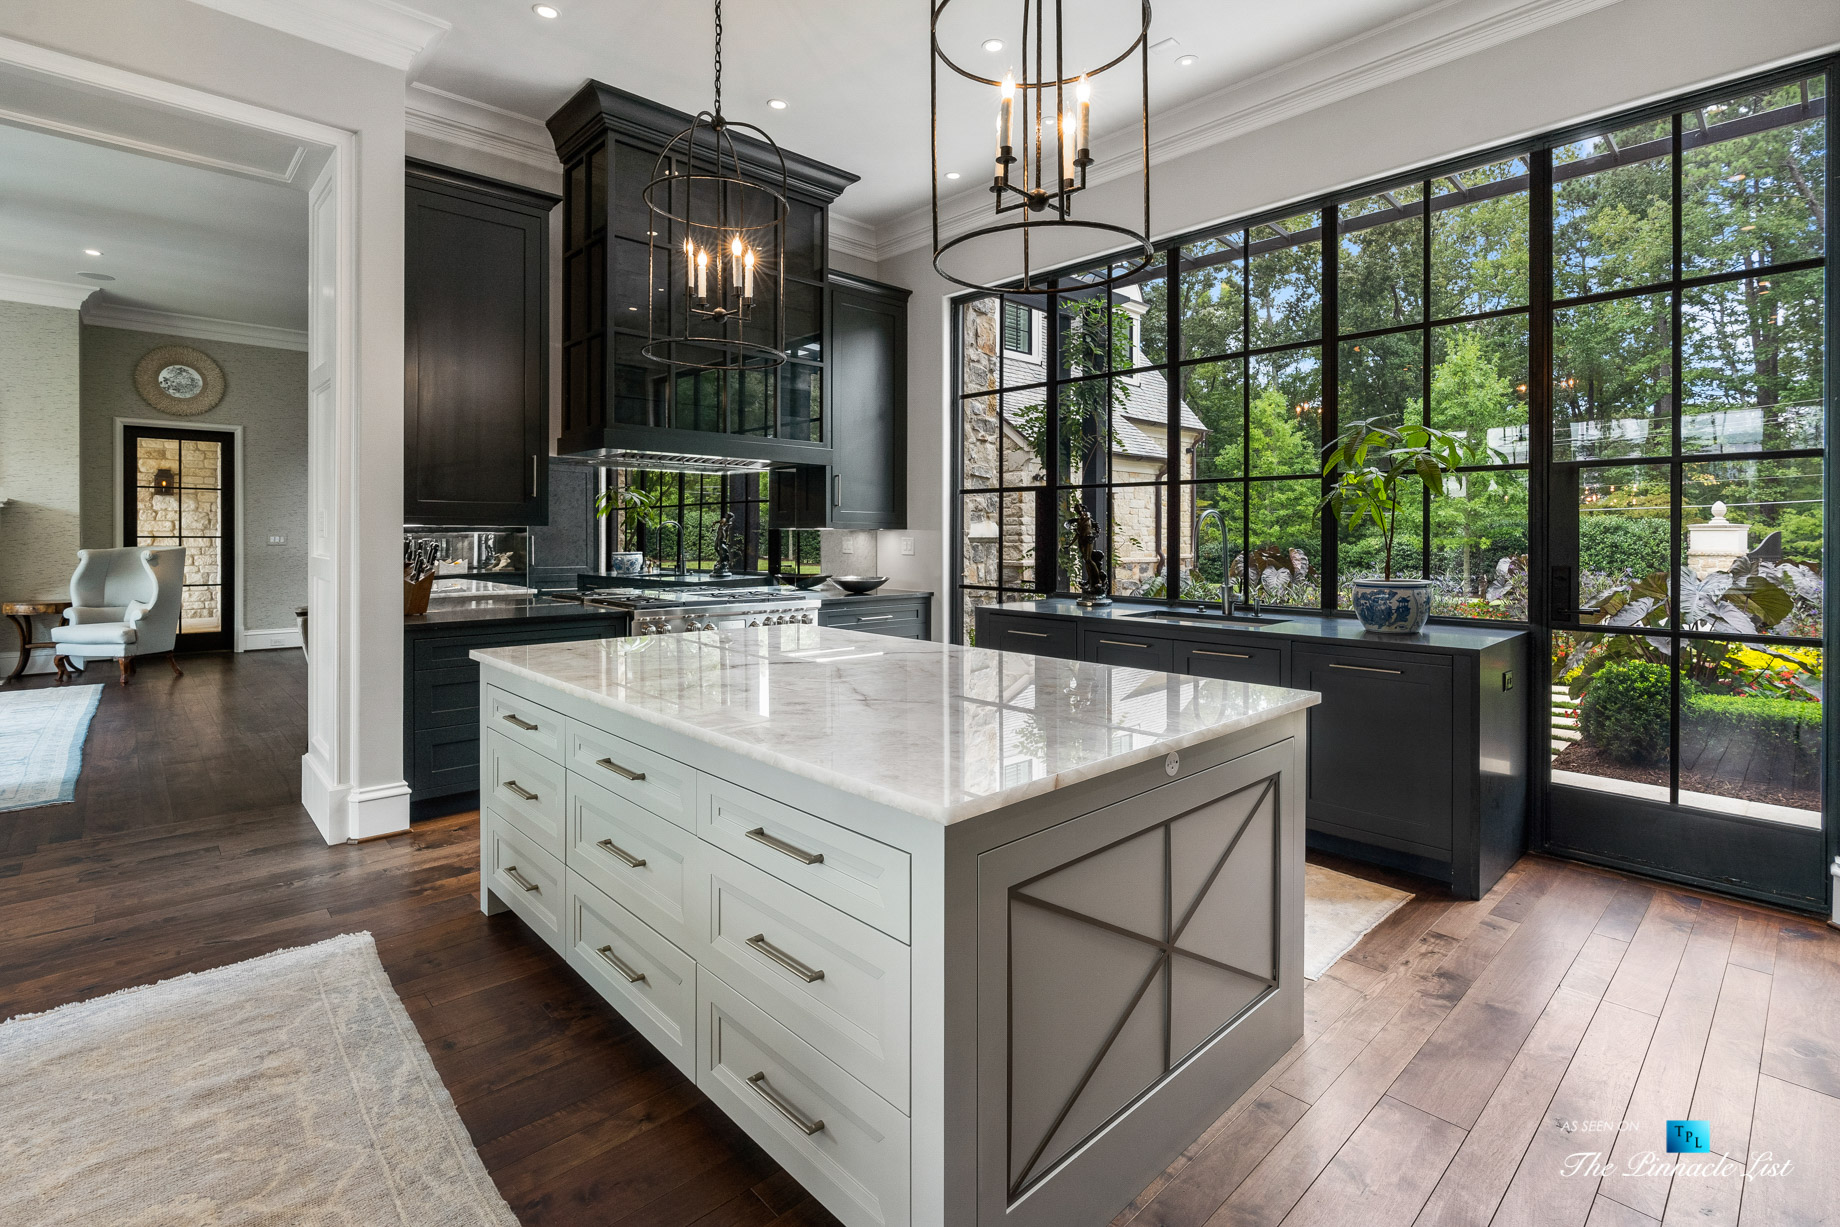 1150 W Garmon Rd, Atlanta, GA, USA - Kitchen Island with Window View - Luxury Real Estate - Buckhead Estate Home